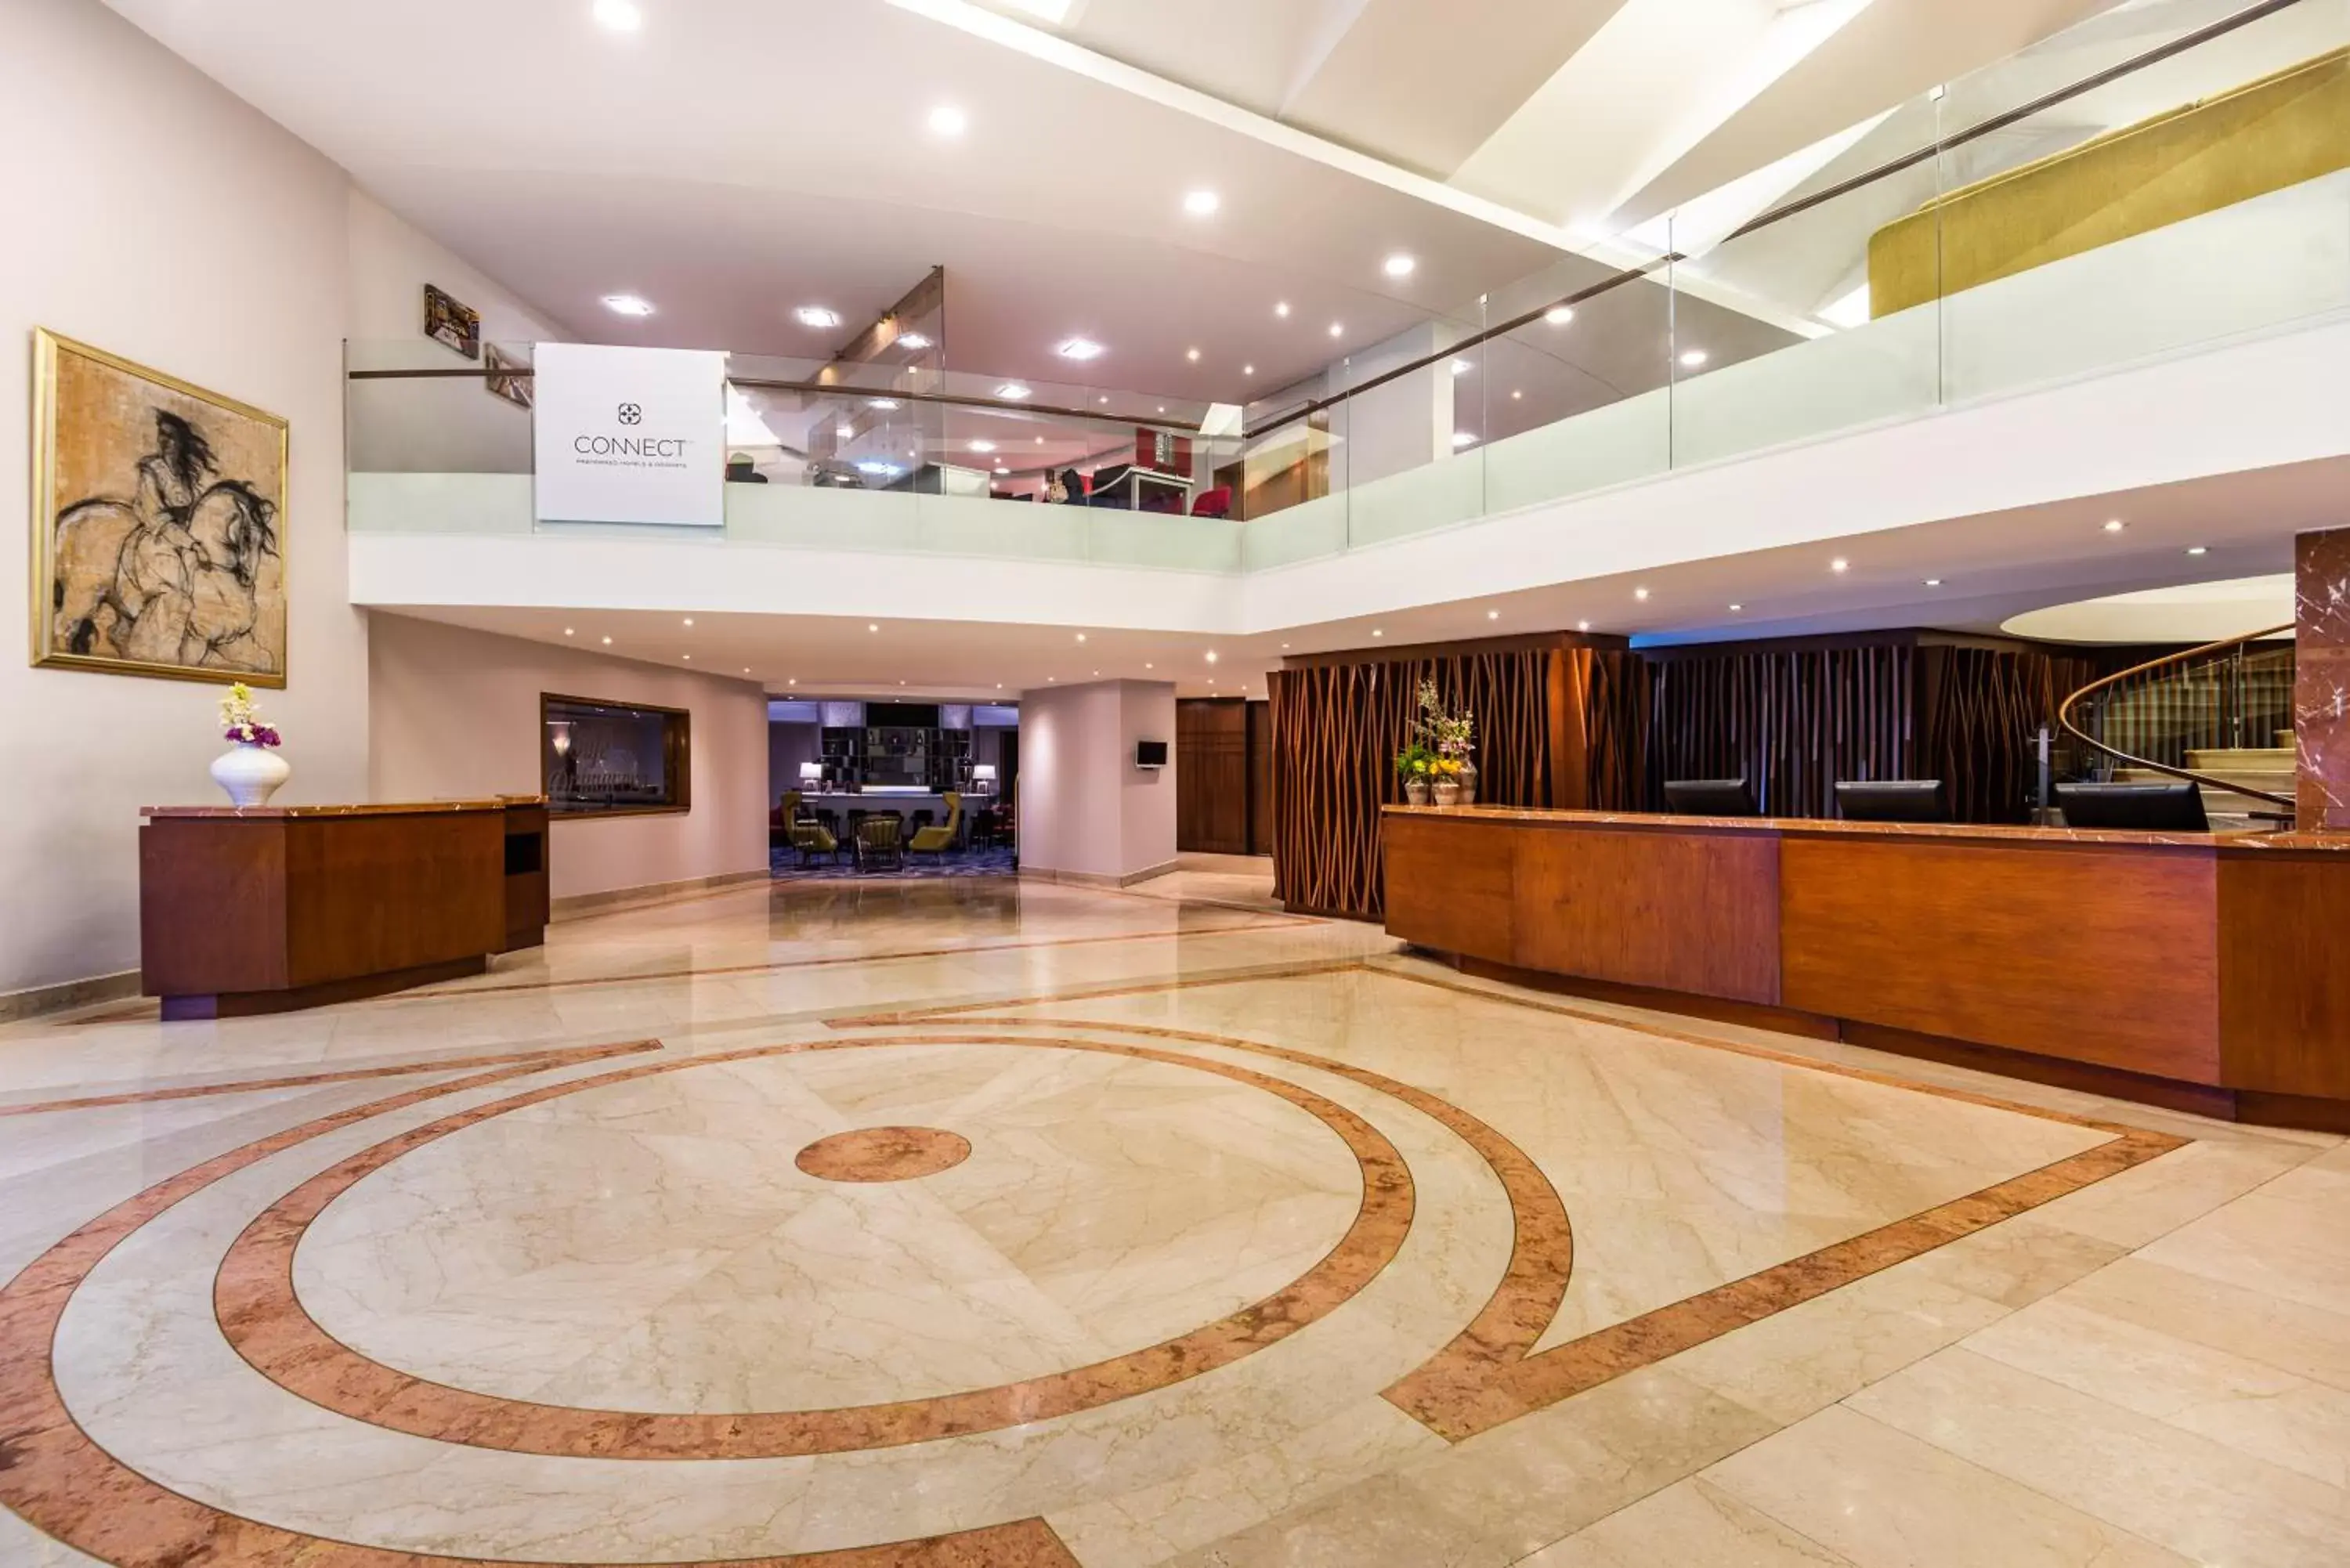 Lobby or reception, Lobby/Reception in Cosmos 100 Hotel & Centro de Convenciones - Hoteles Cosmos